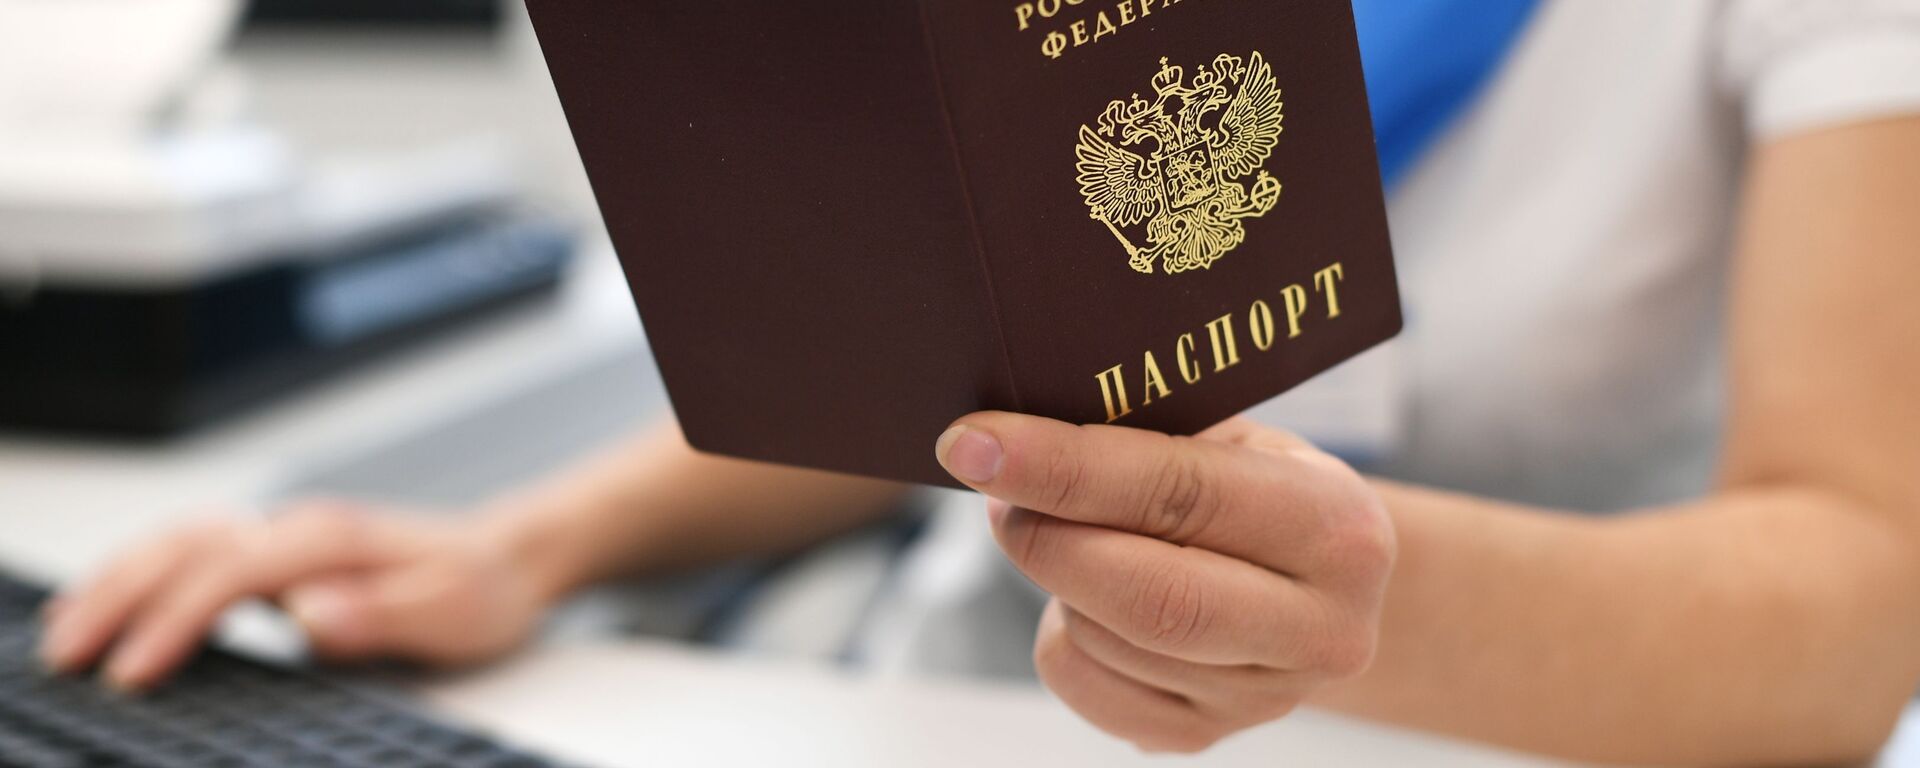 Паспорт Российской Федерации. Архивное фото - Sputnik Кыргызстан, 1920, 21.10.2021